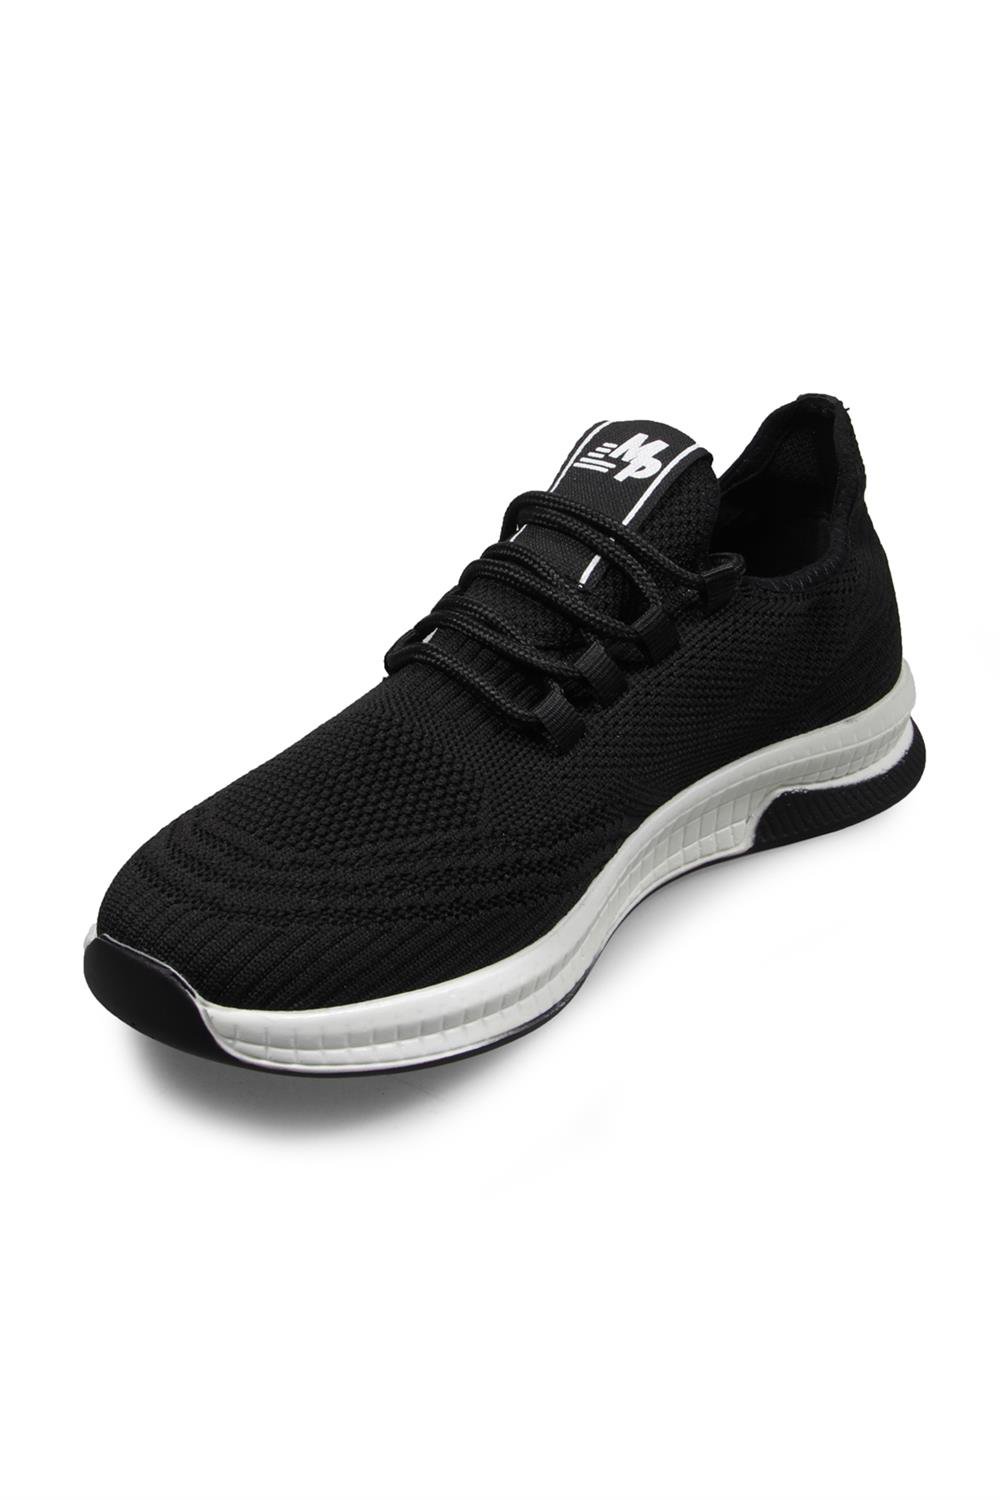 Erkek Siyah-beyaz Spor Ayakkabı Modelleri ve Fiyatları